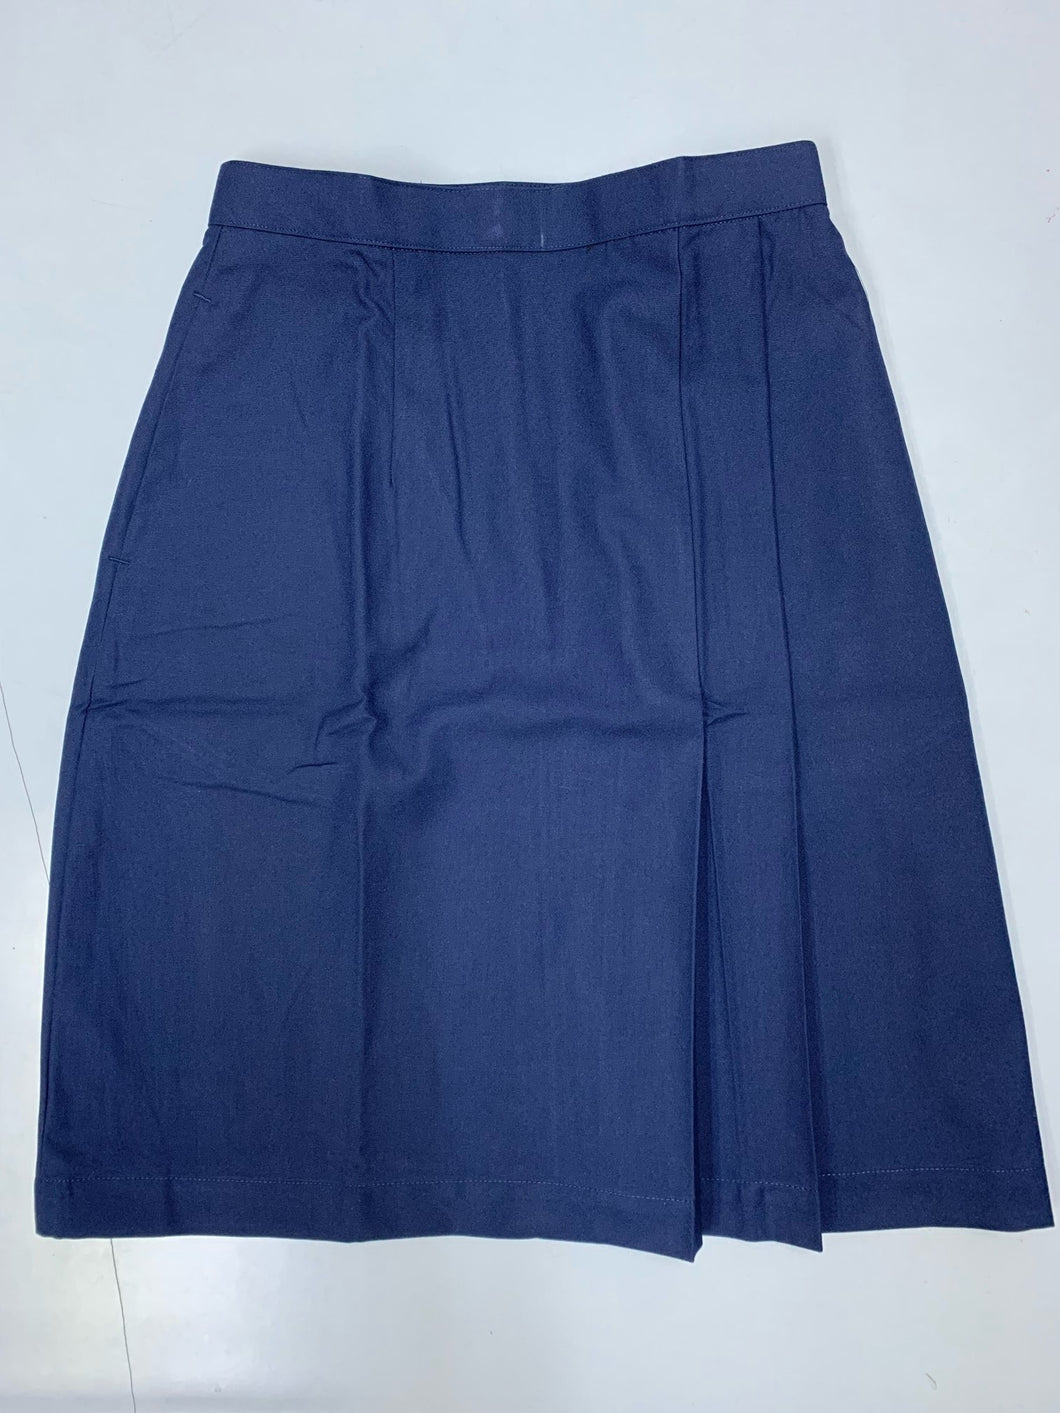 Greenridge Skirt